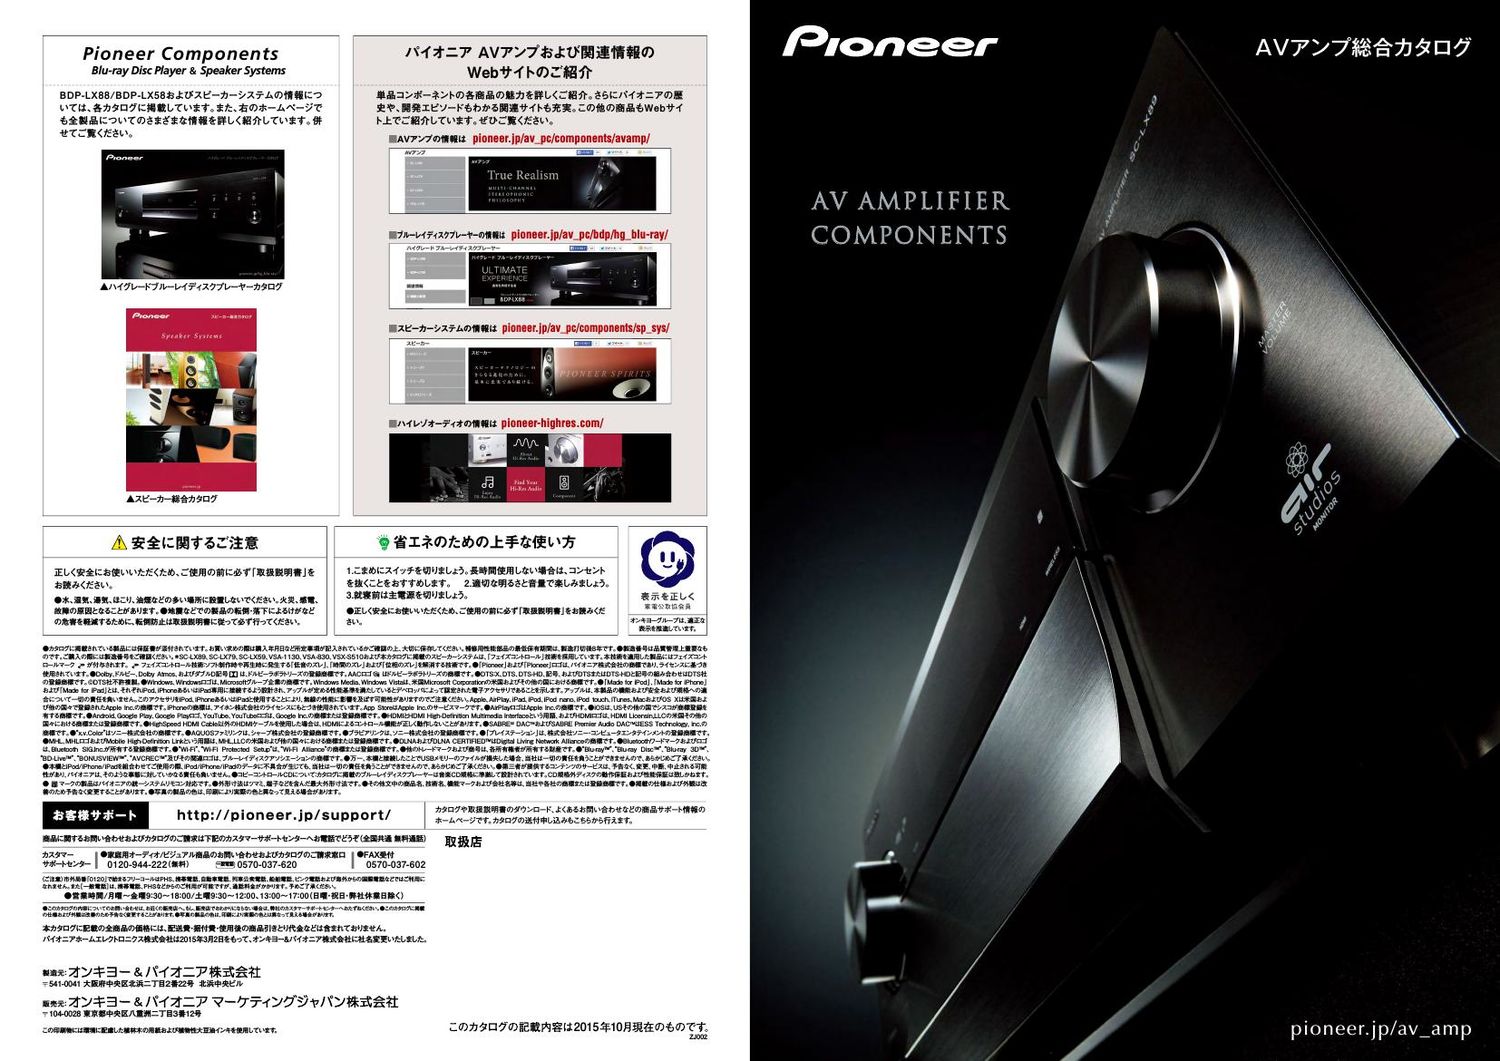 Pioneer AV Amplifier Components